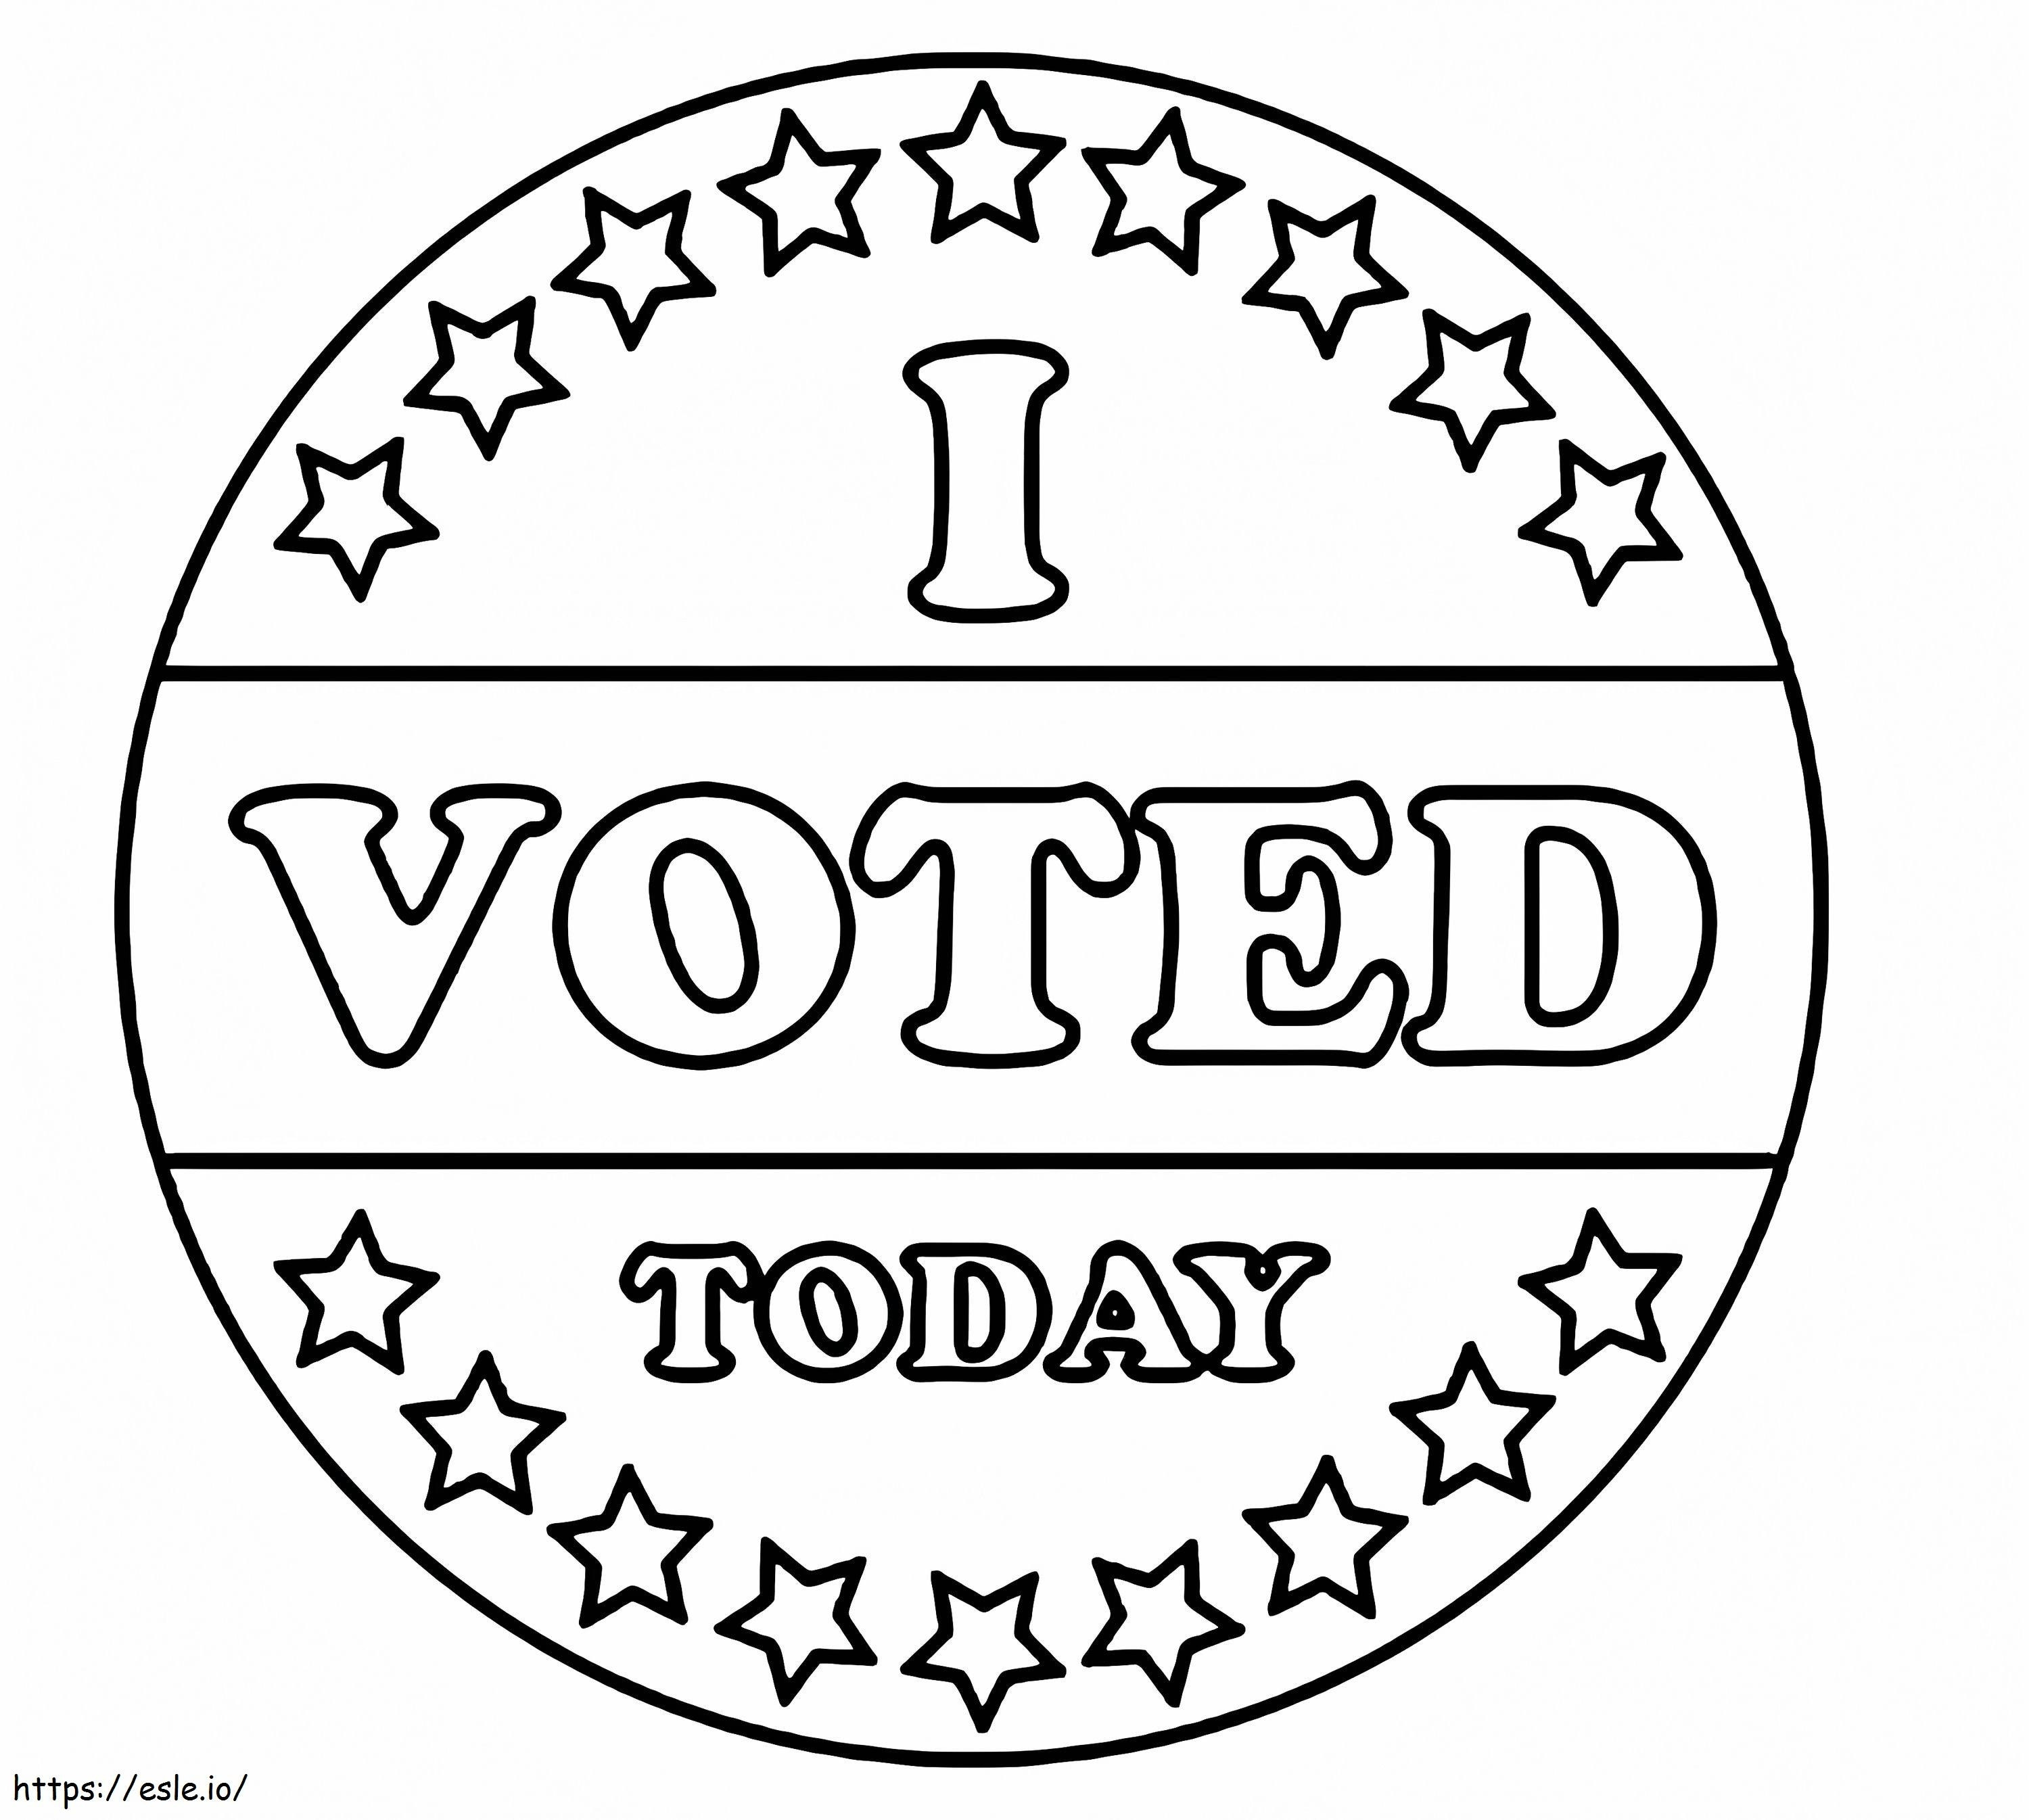 Ho votato oggi da colorare